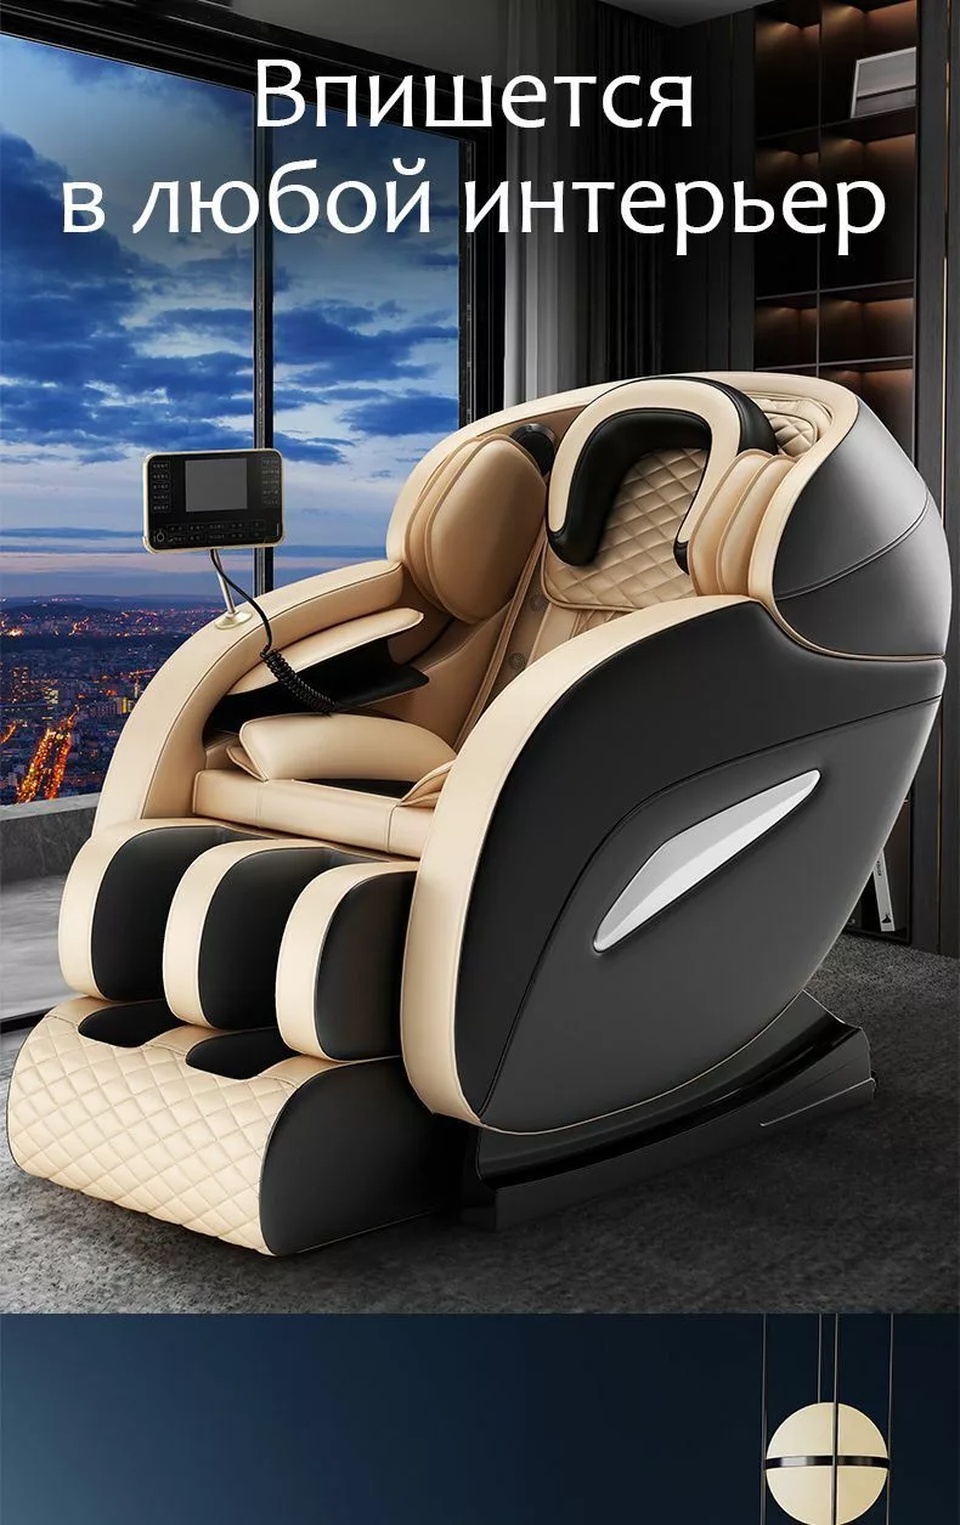 Массажное кресло A08 Золотое - 80 000 ₽, заказать онлайн.